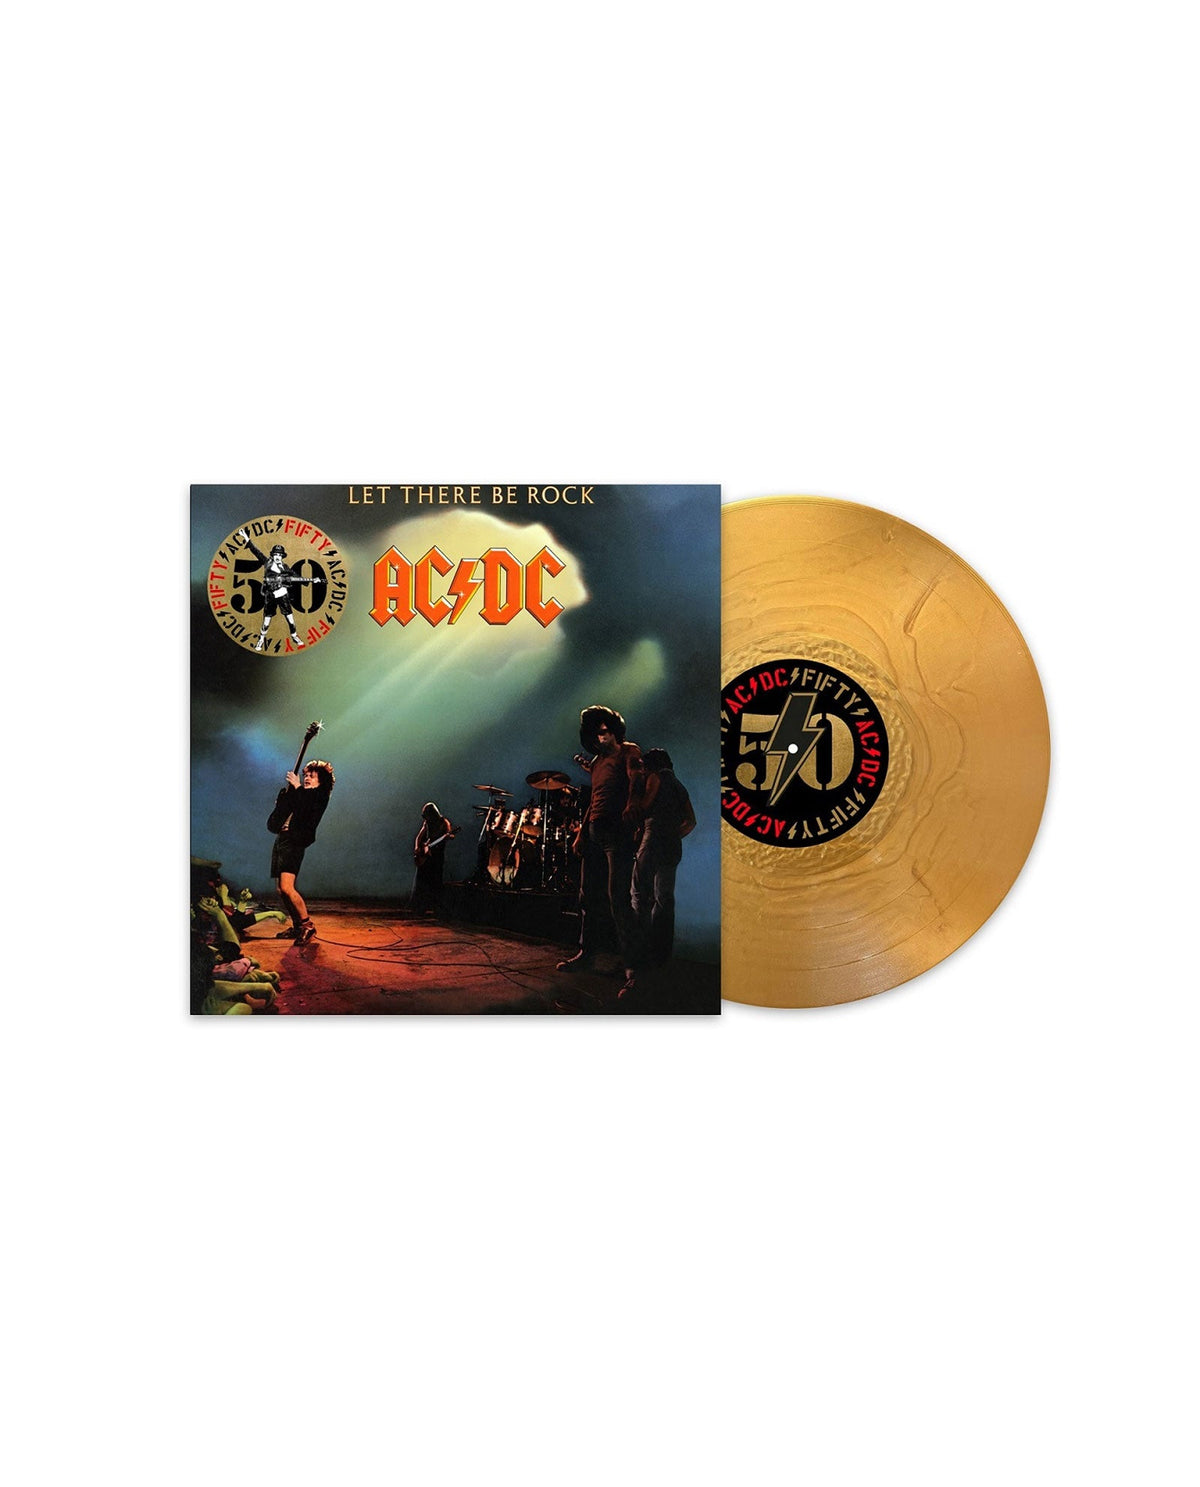 AC/DC - LP Vinilo Dorado "Let There Be Rock" Ed. 50 aniversario - D2fy · Rocktud - Rocktud